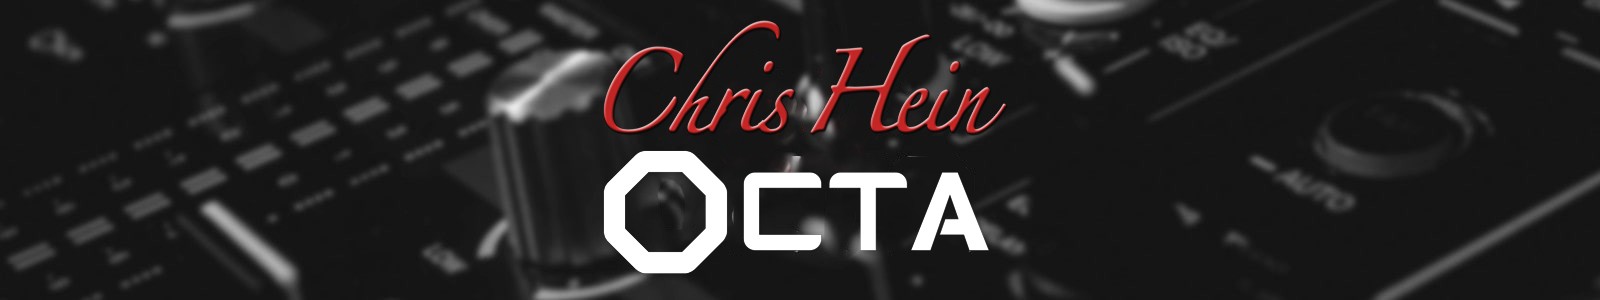 Chris Hein OCTA by Best Service